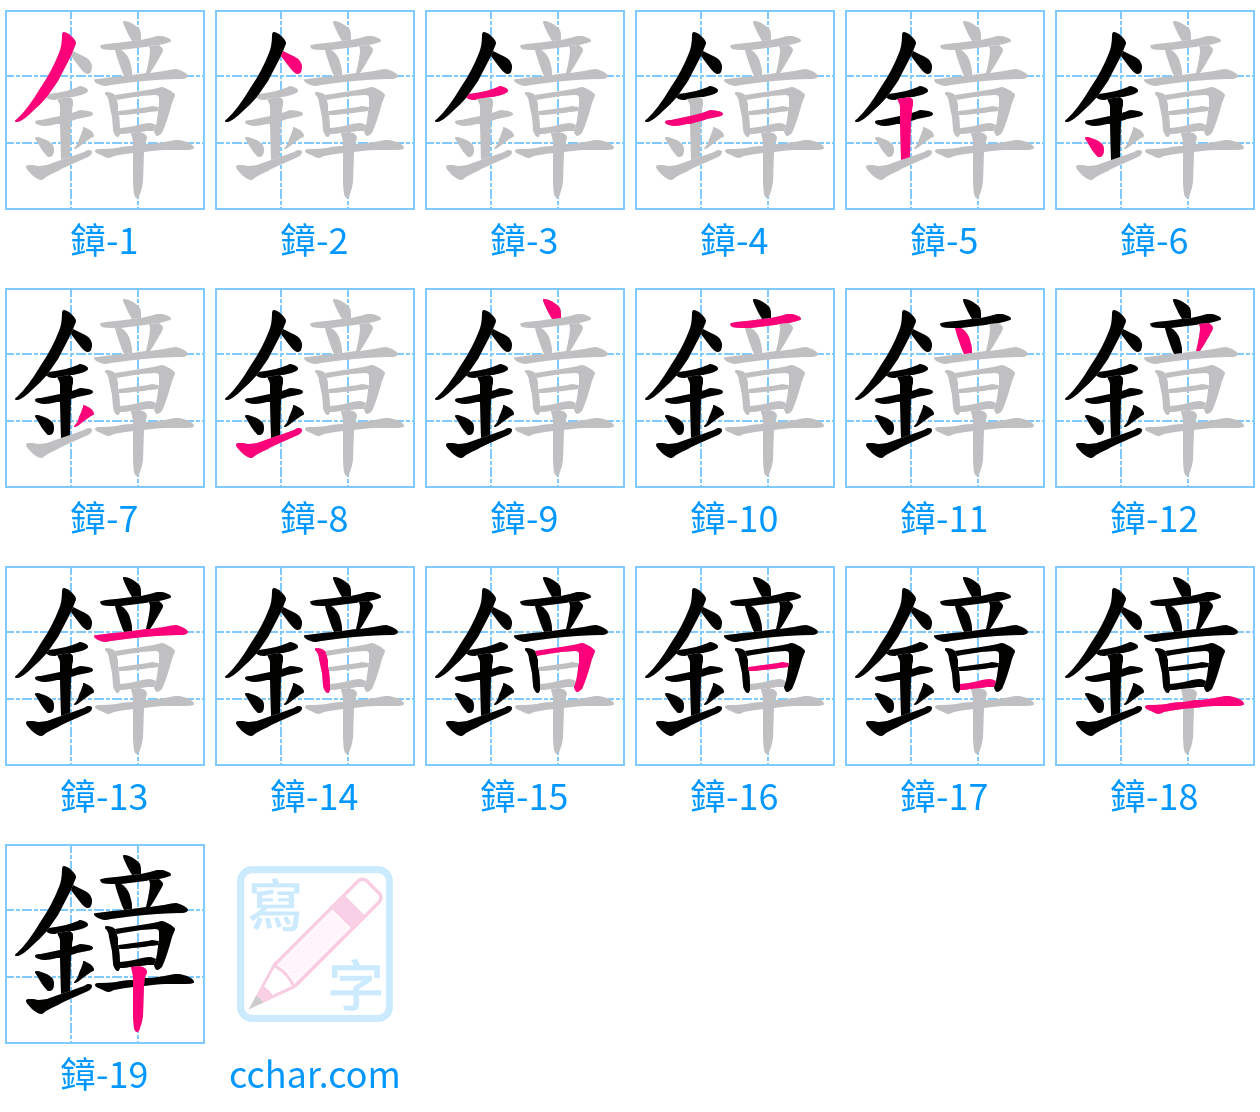 鏱 stroke order step-by-step diagram